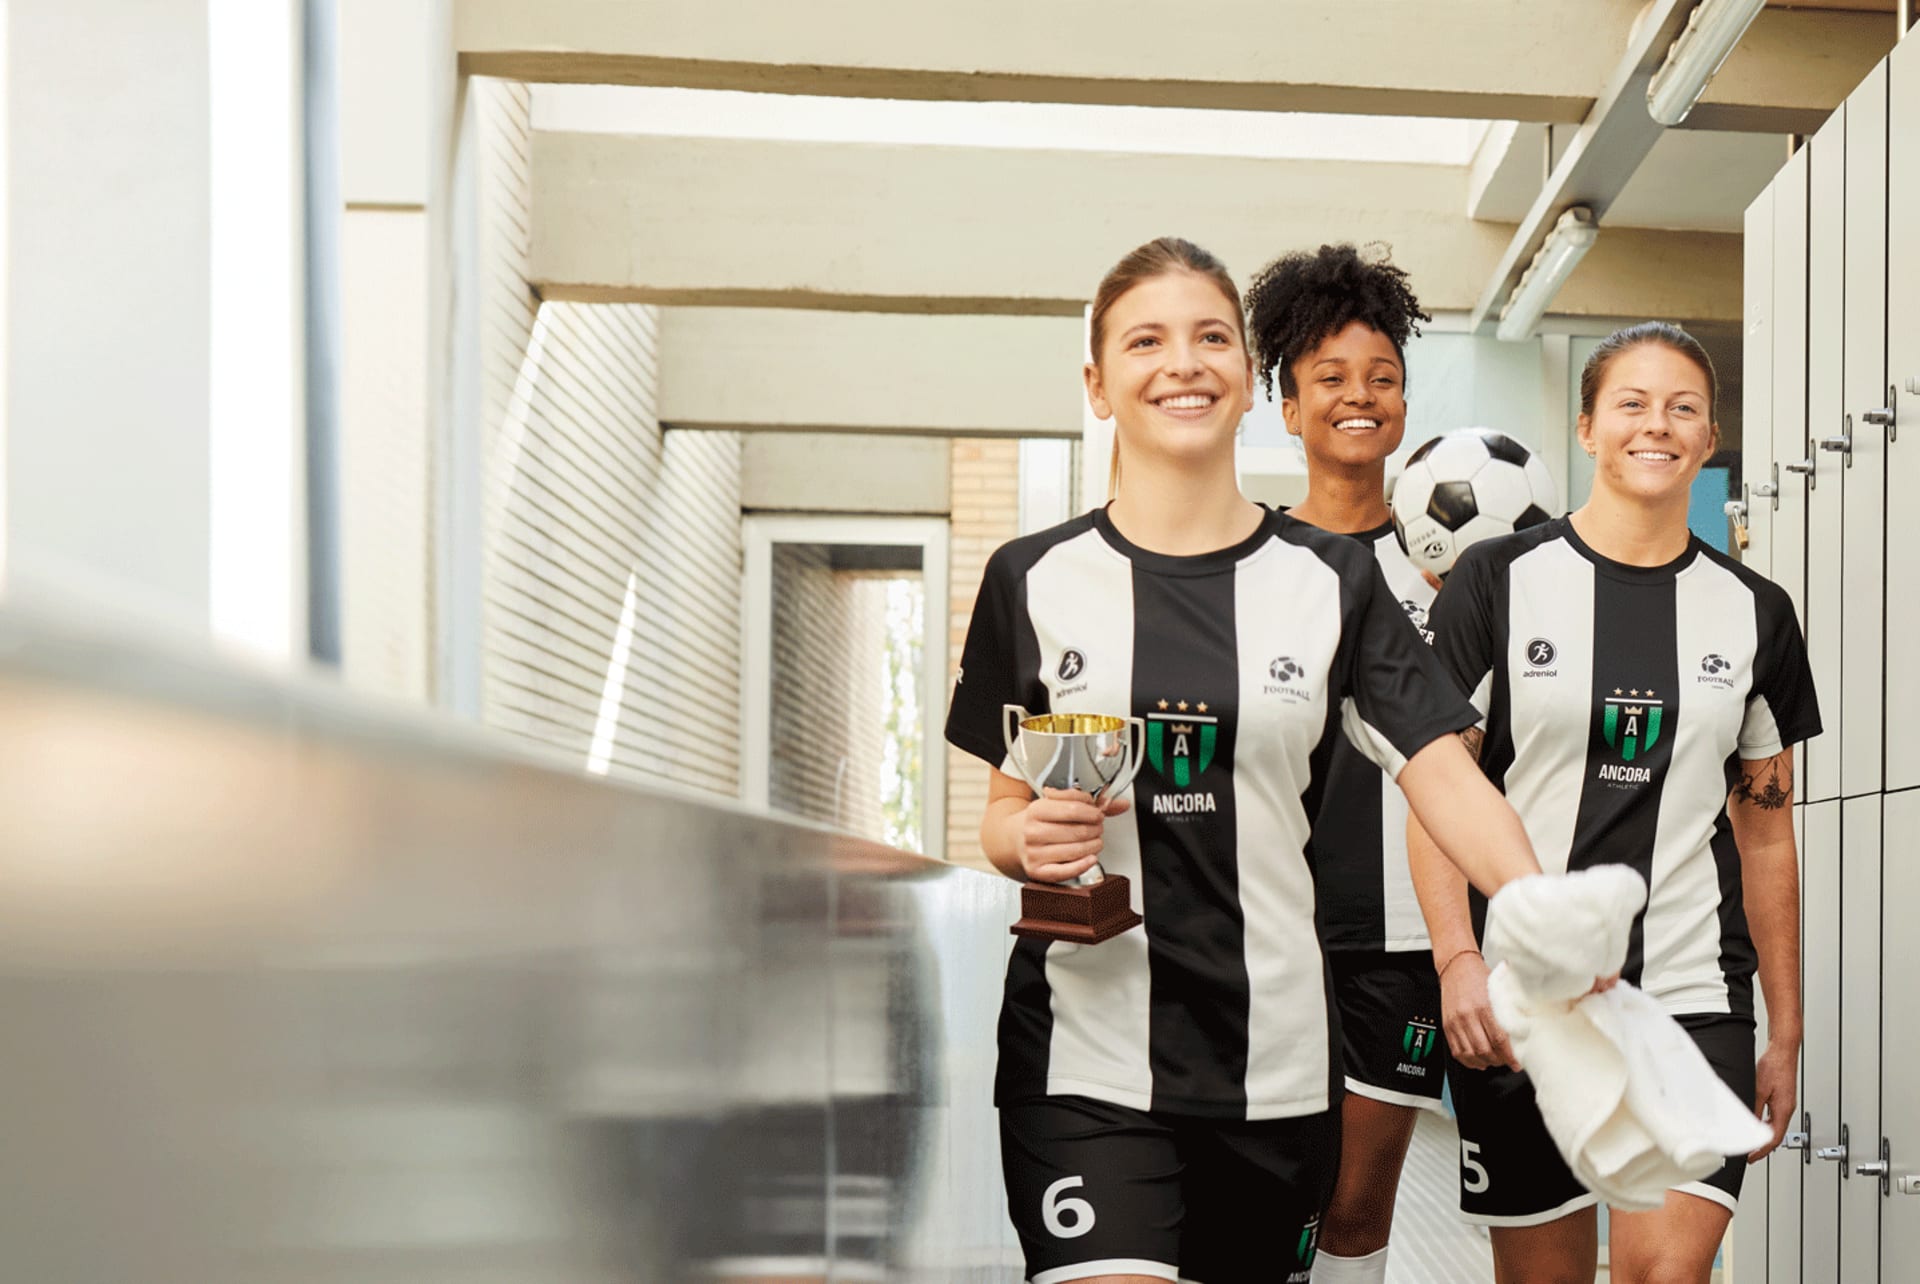 Un equipo de fútbol de mujeres luciendo una camiseta y pantalones cortos de fútbol de mujer, celebrando su victoria con un trofeo.